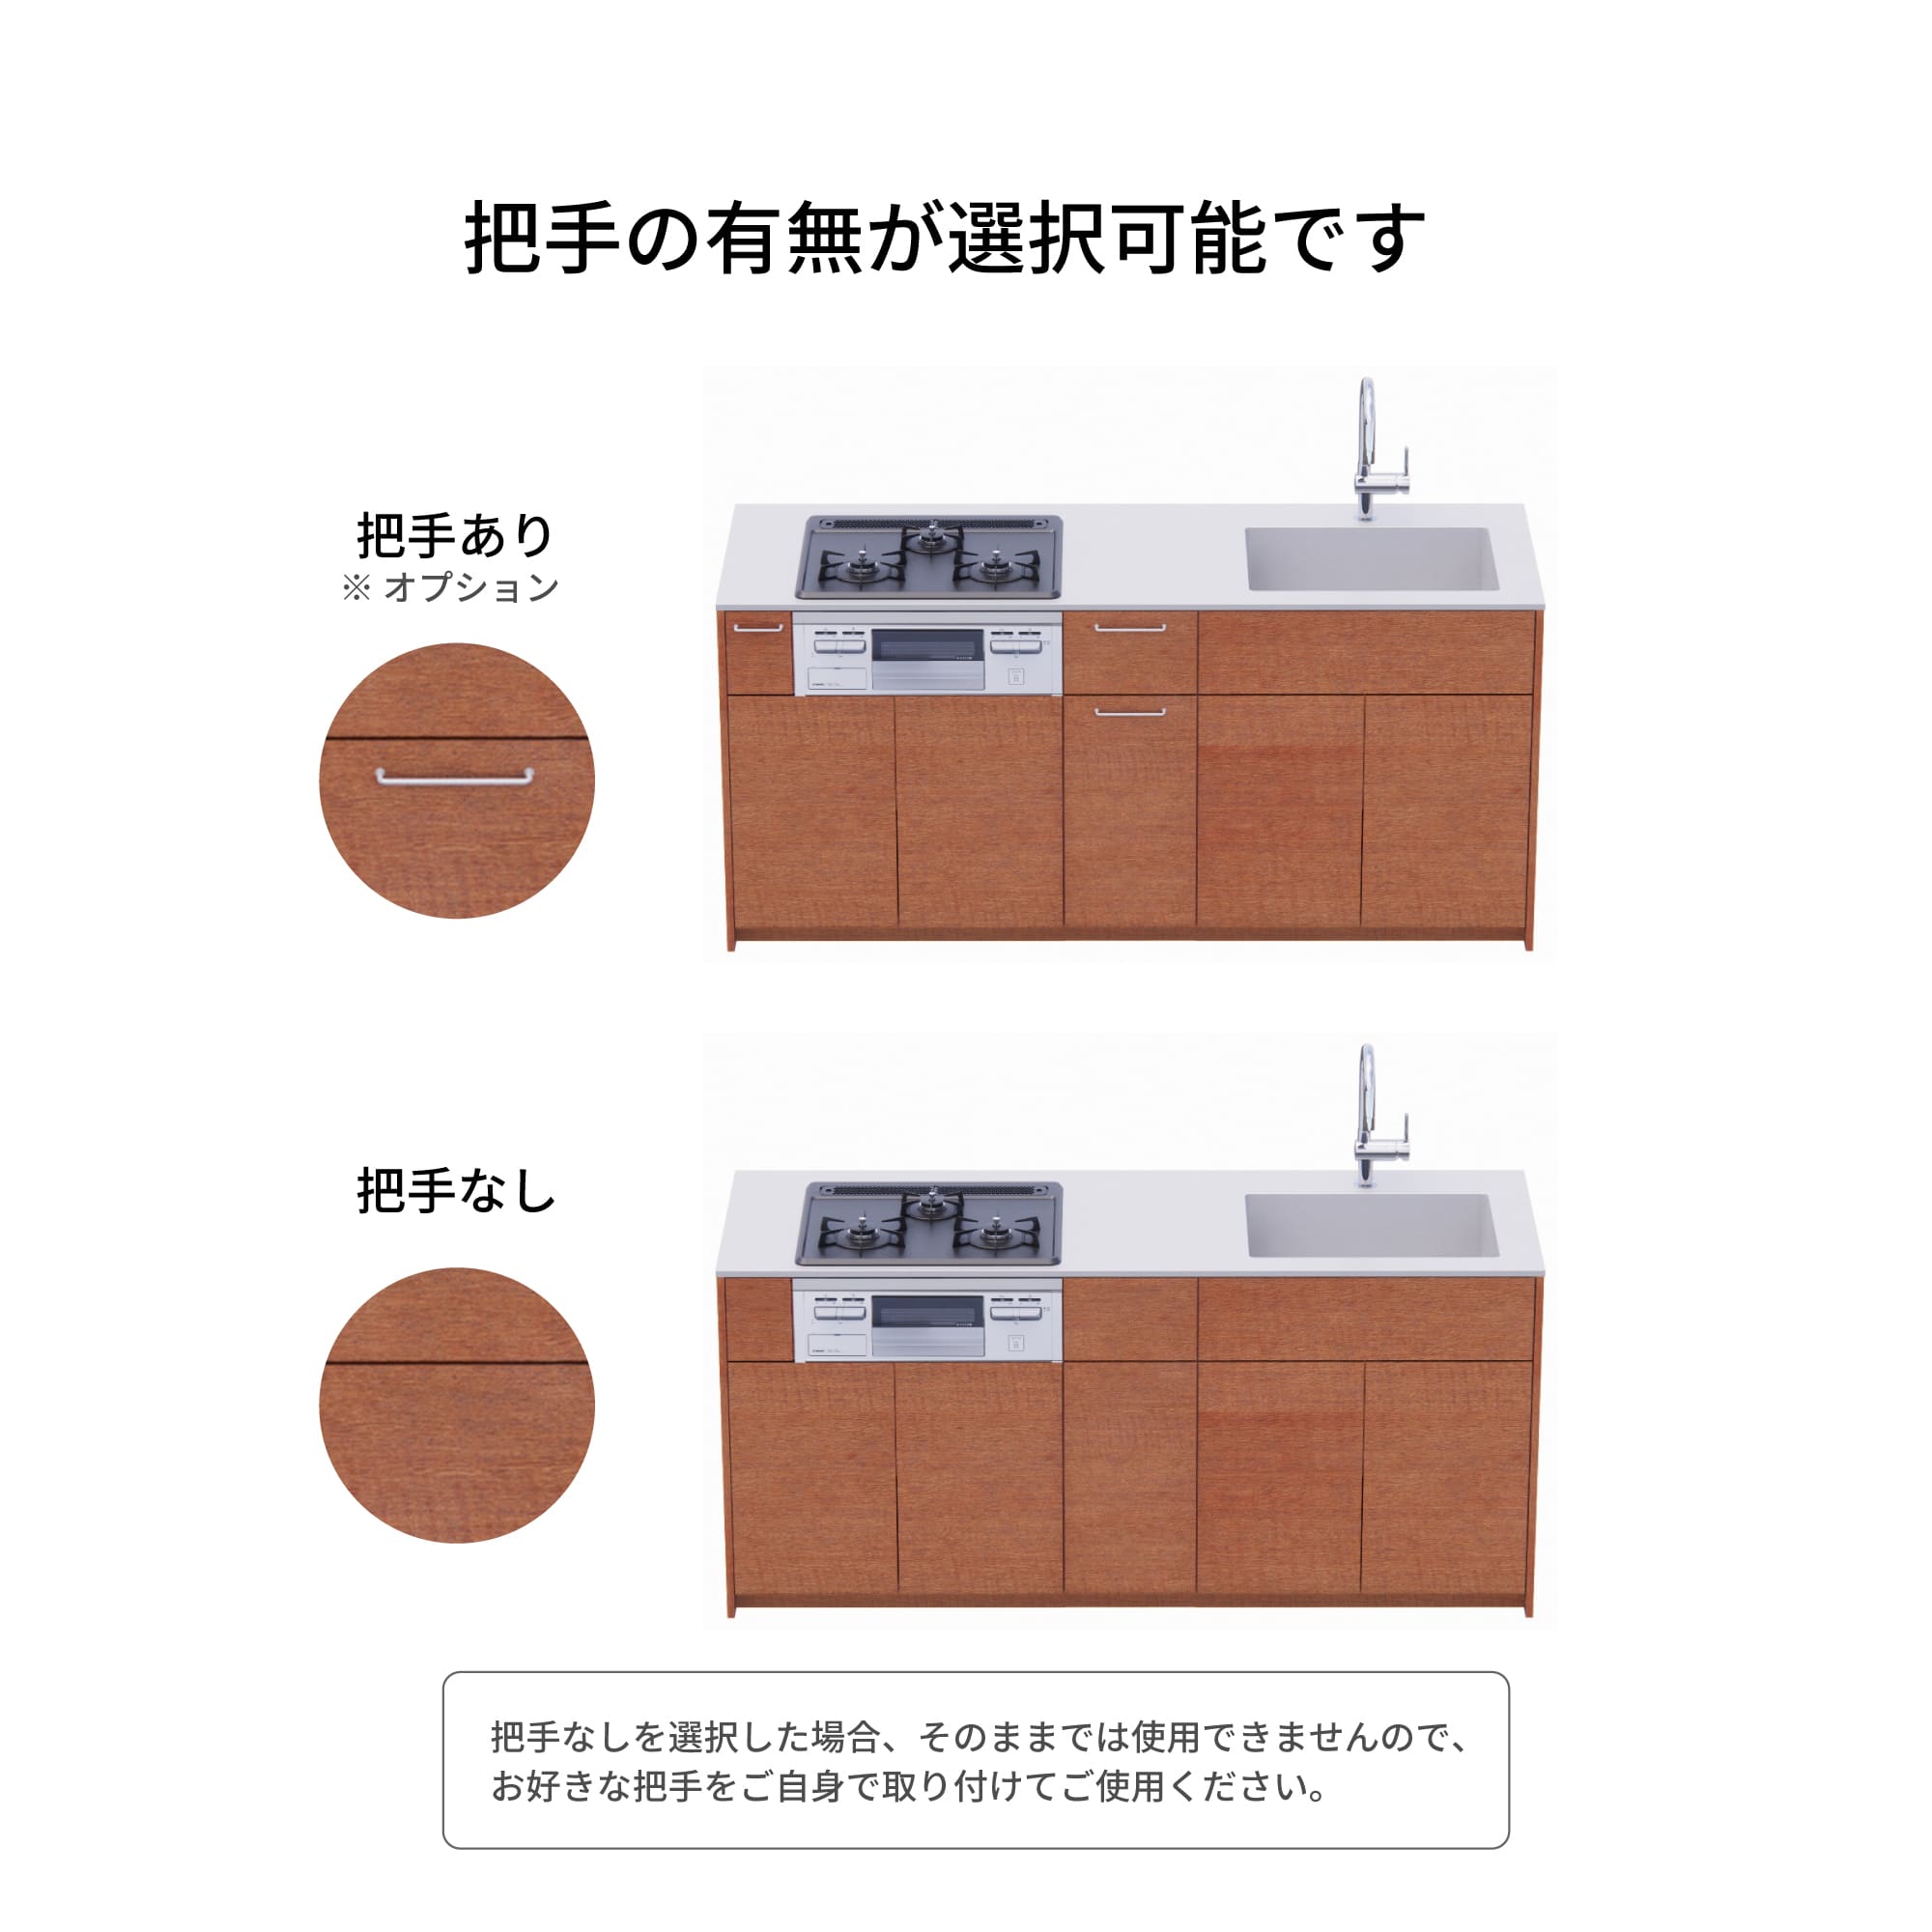 木製システムキッチン 壁付け型 W1990・コンロあり / オーブンなし / 食洗機なし KB-KC022-13-G183 把手の有無が選択可能です